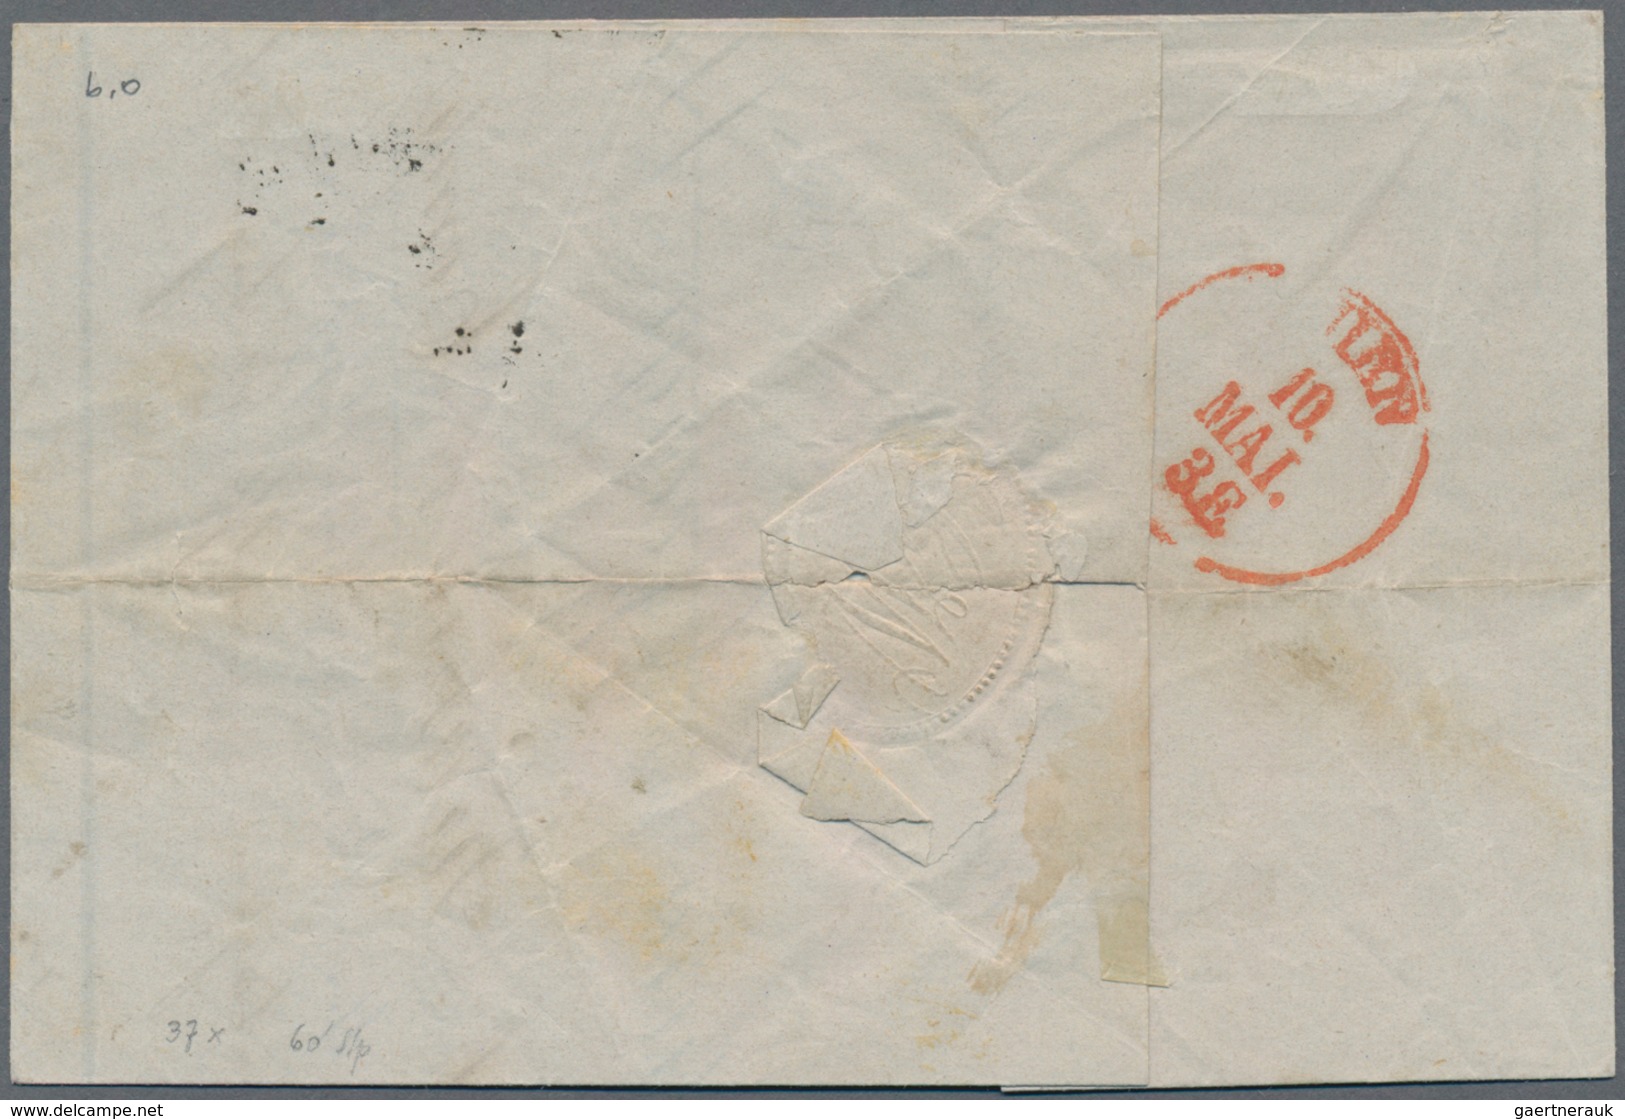 Österreich: 1850, Freimarke 9 Kr. Handpapier, Type I Auf Unkompletter Briefhülle Von Nachod Nach Wie - Used Stamps